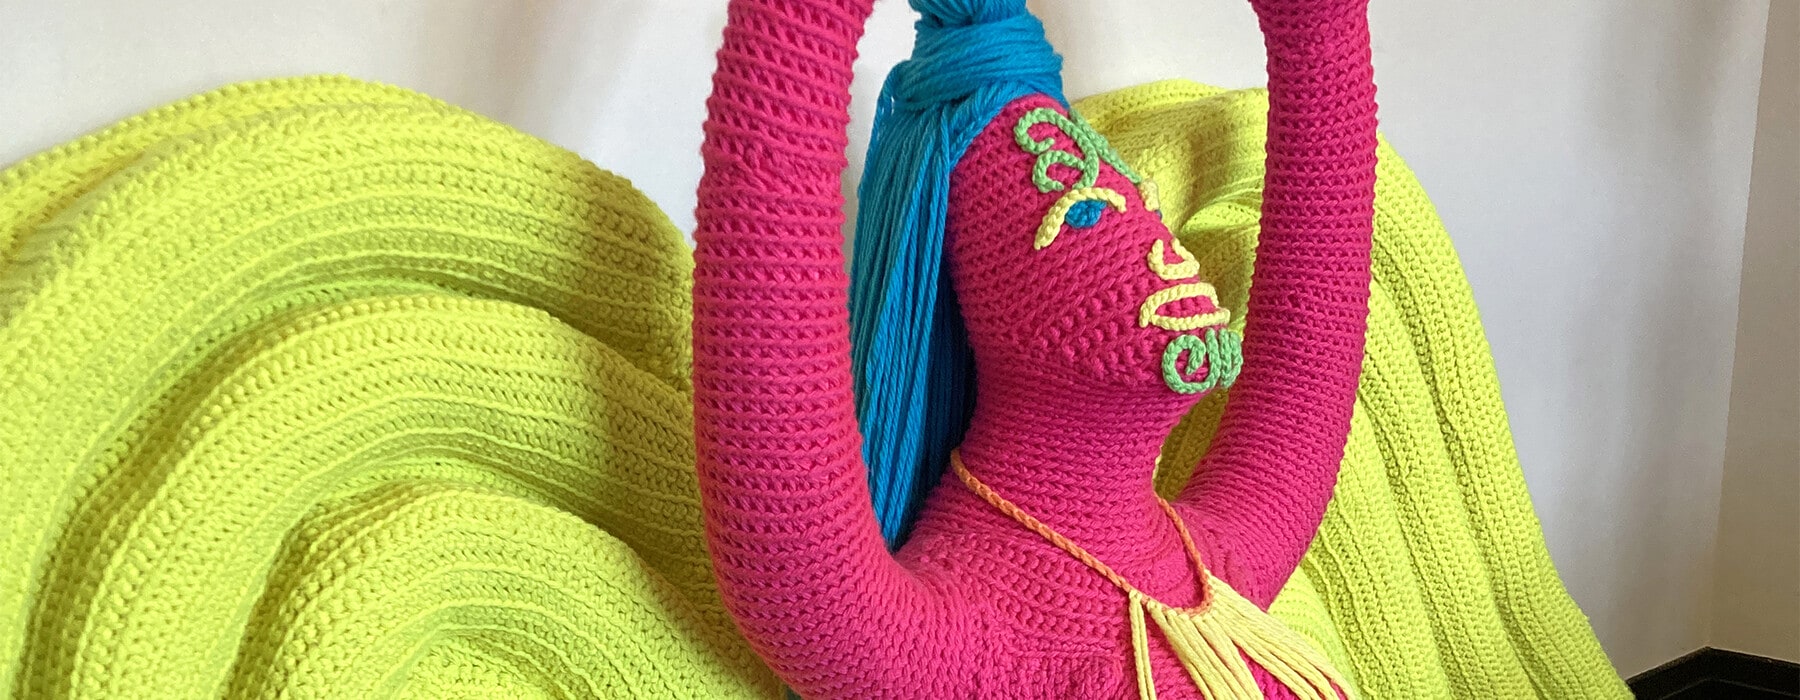 knitting-joy-of-making-wool-hero-2